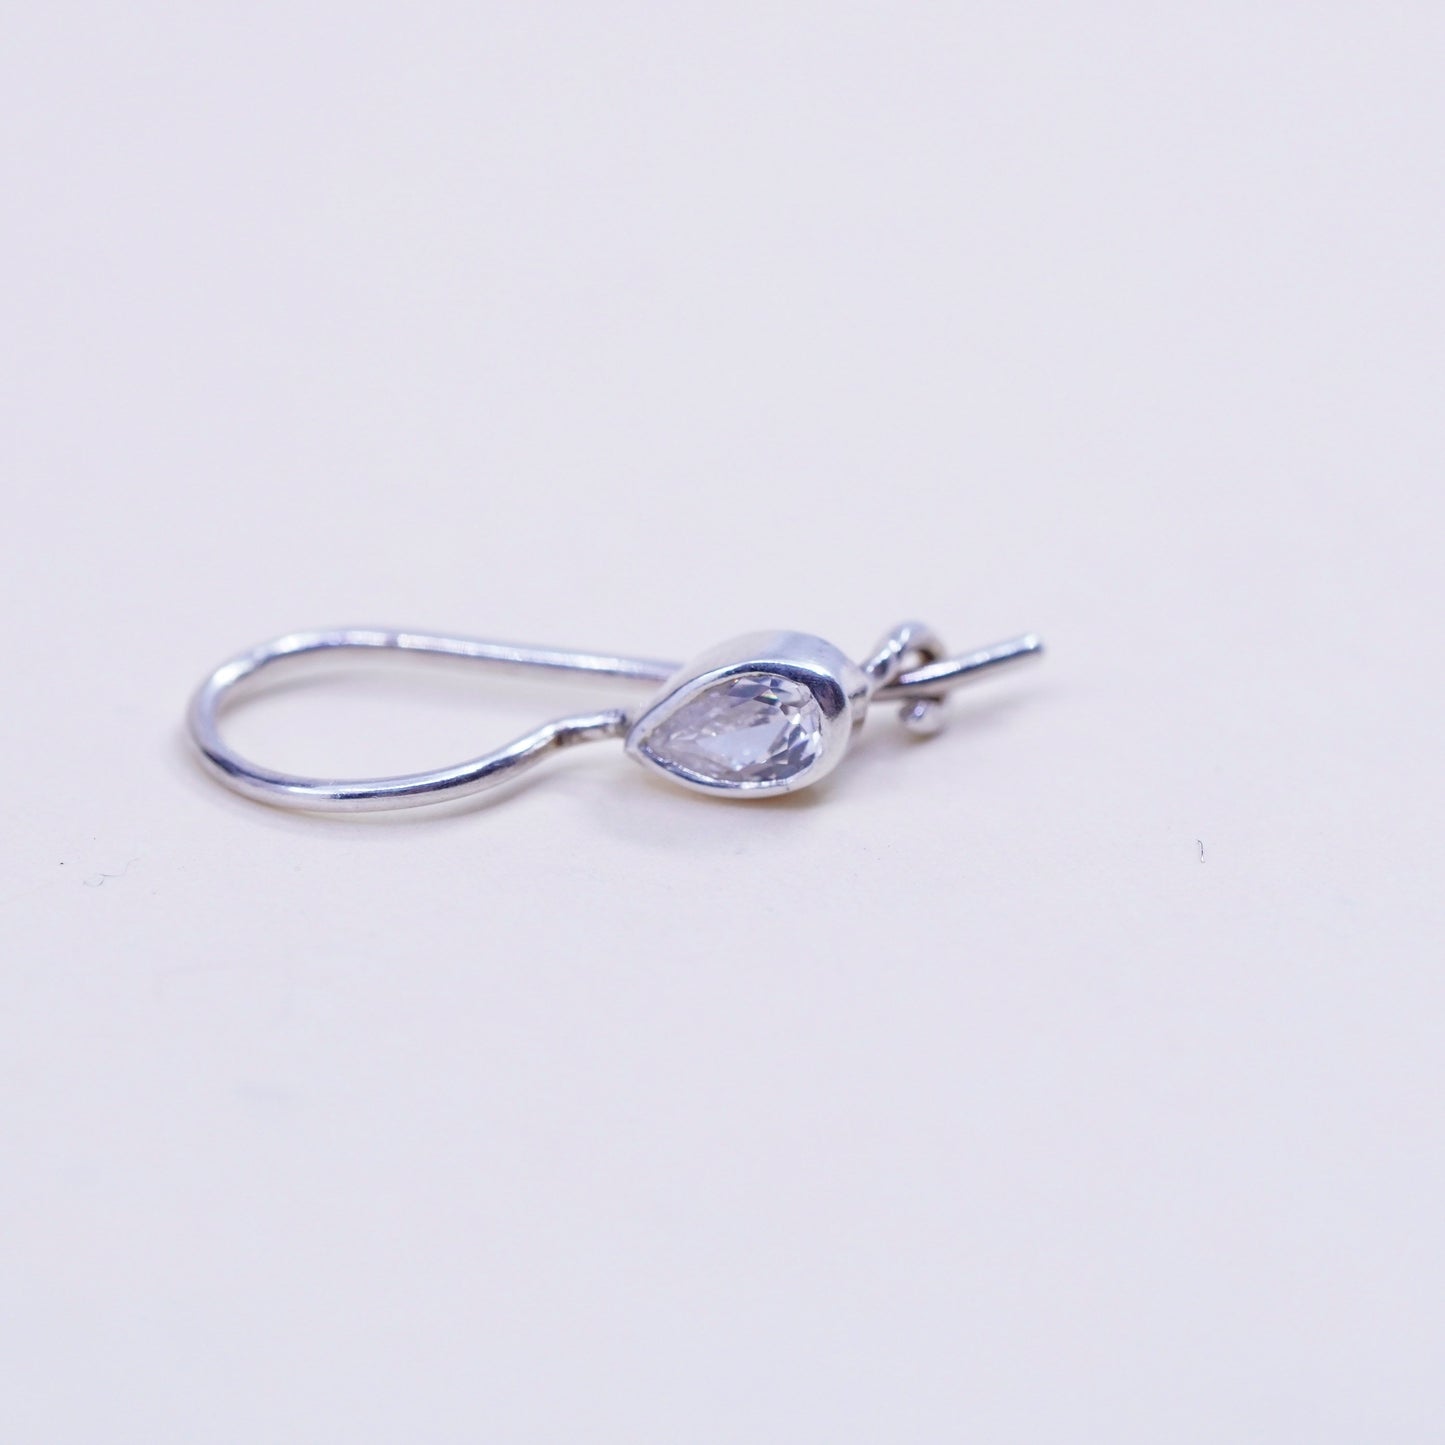 Vintage Sterling silver handmade earrings, Dangles w/ teardrop crystal dangles